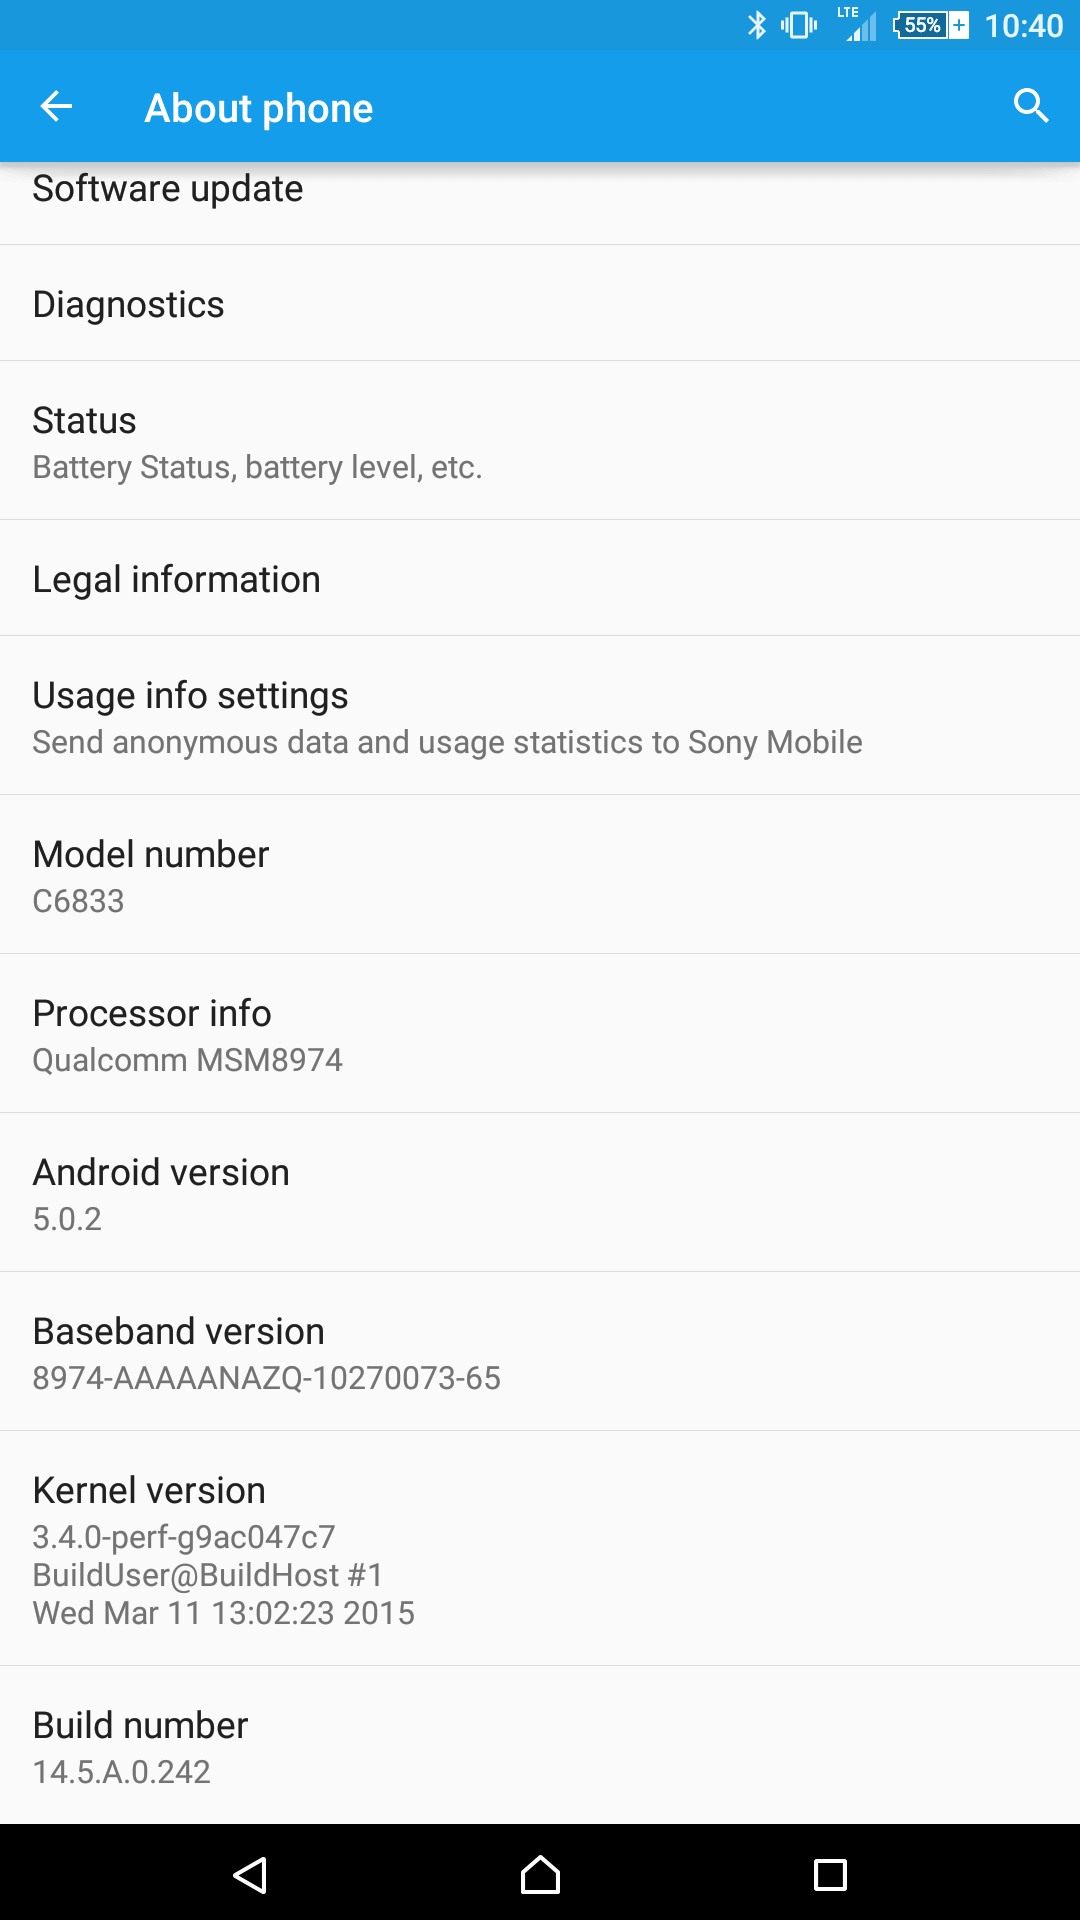 Xperia Z Ultra 14.5.A.0.242 Lollipop update